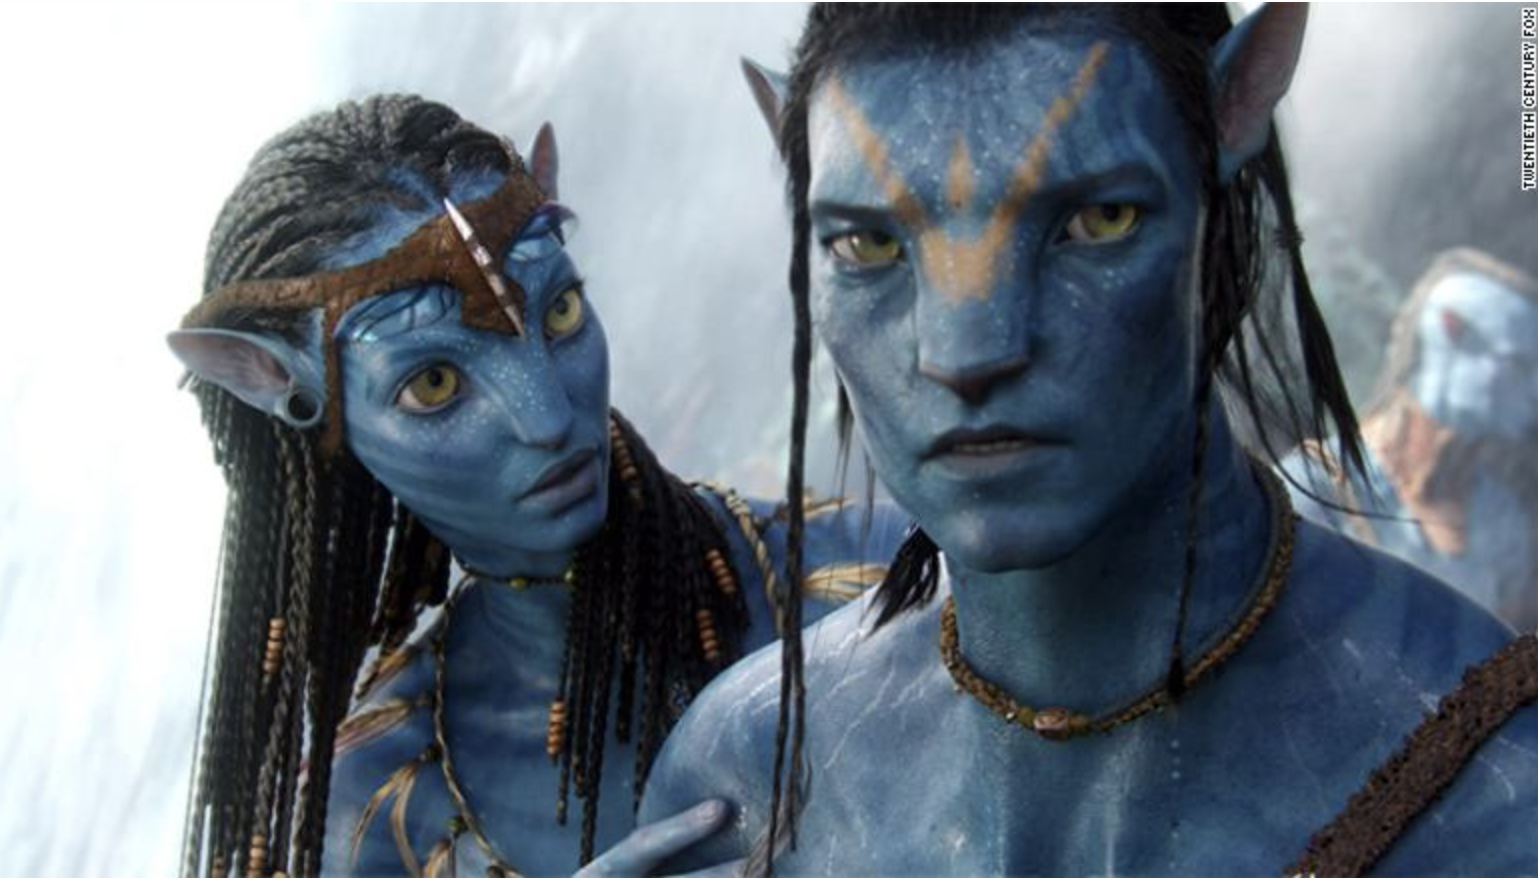 Marele anunț a fost făcut: „Avatar 2” va fi gata anul acesta. Când va fi lansat lungmetrajul